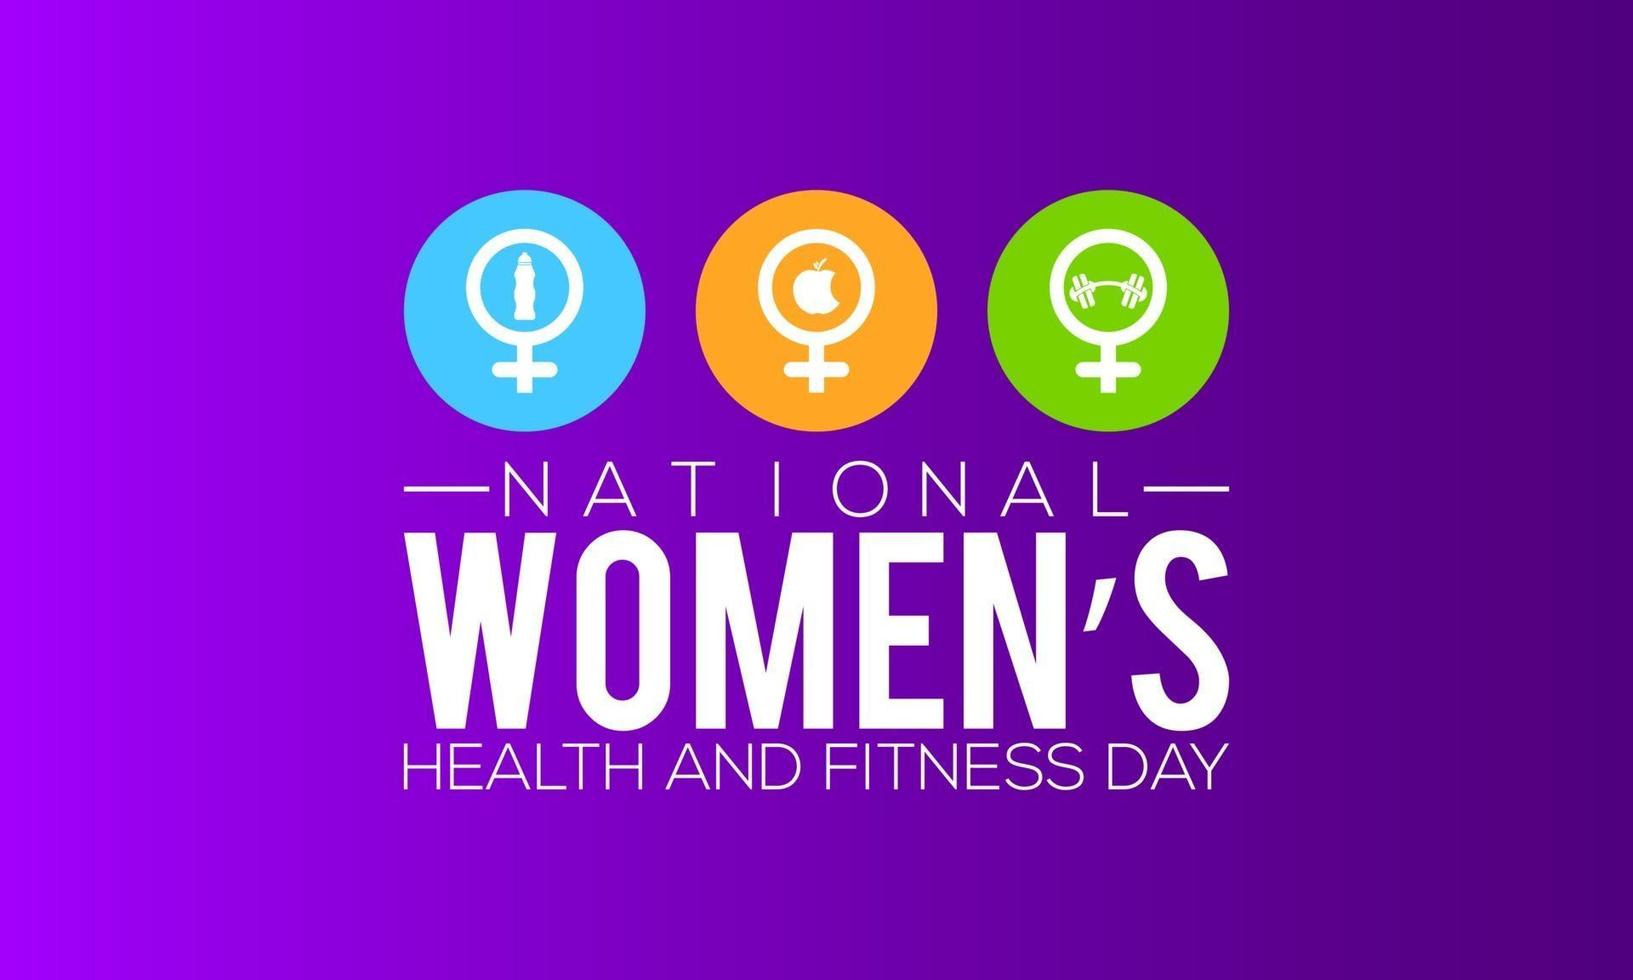 bannerontwerp voor nationale gezondheids- en fitnessdag voor vrouwen vector